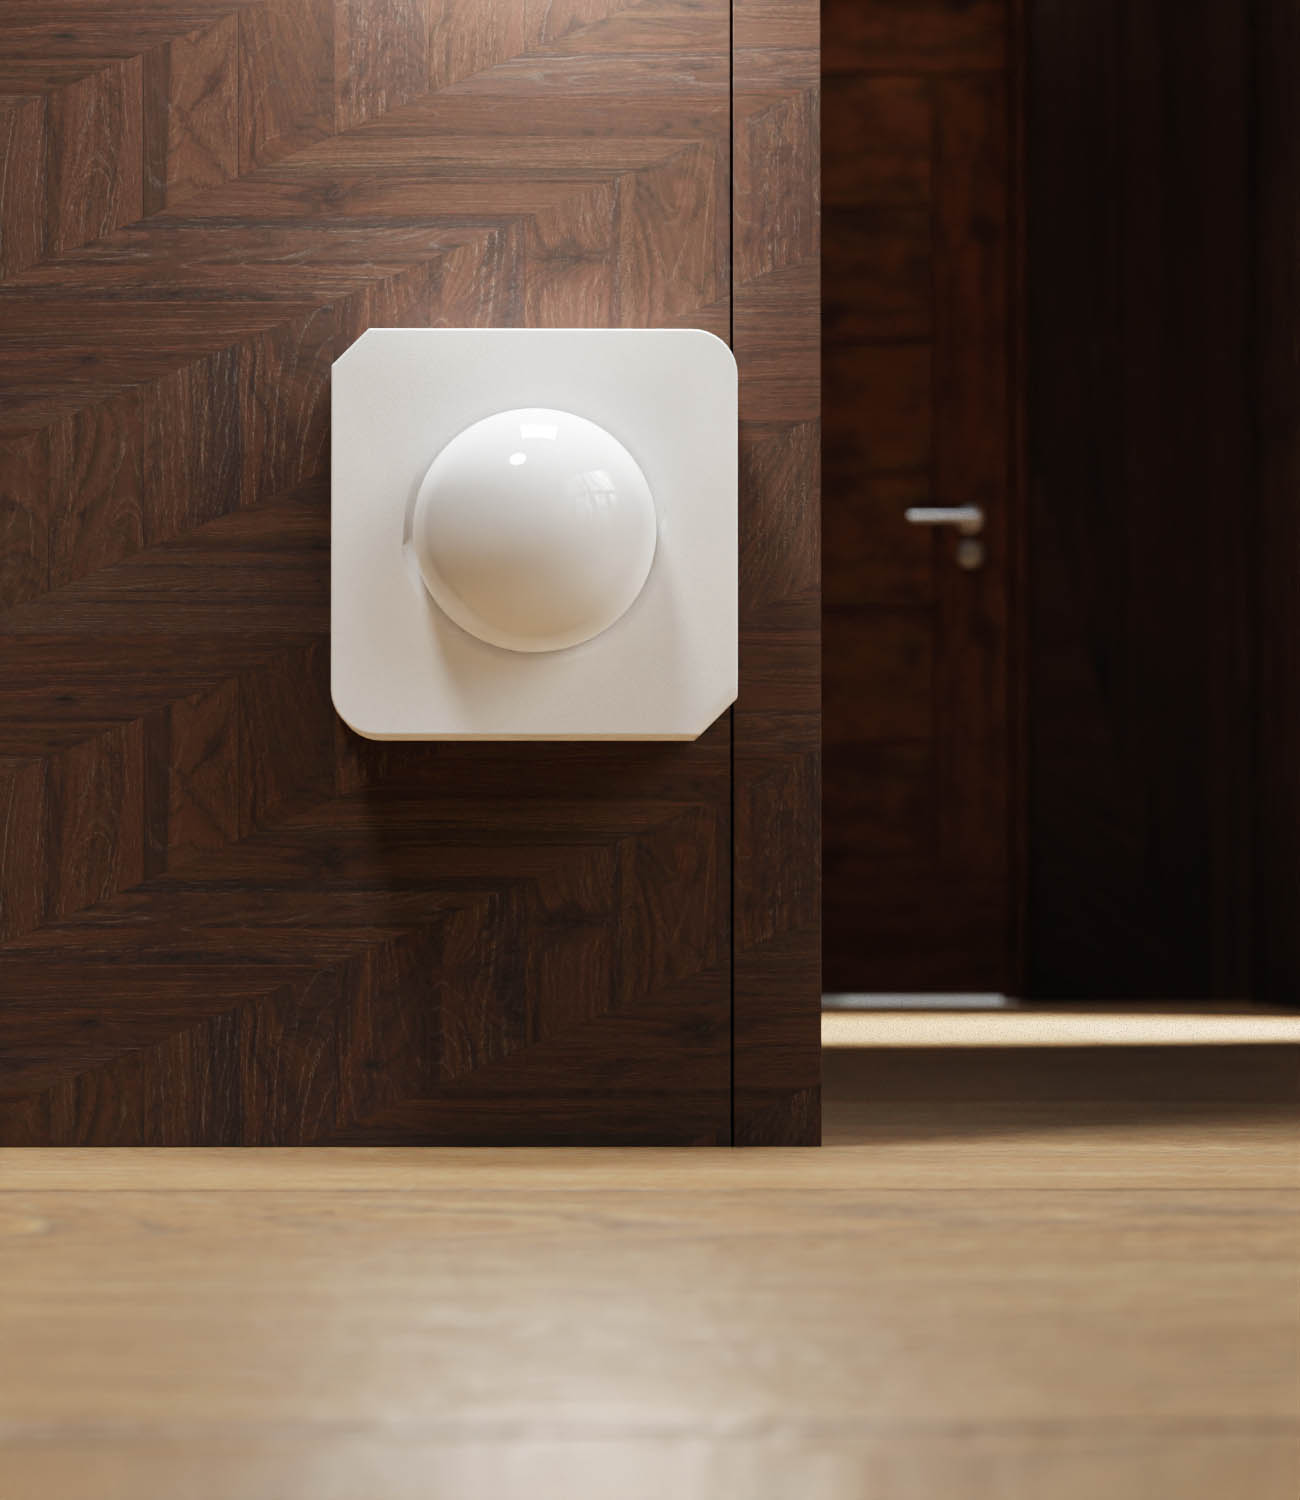 white-motion-sensor-device-installed-on-wooden-panel-near-floor